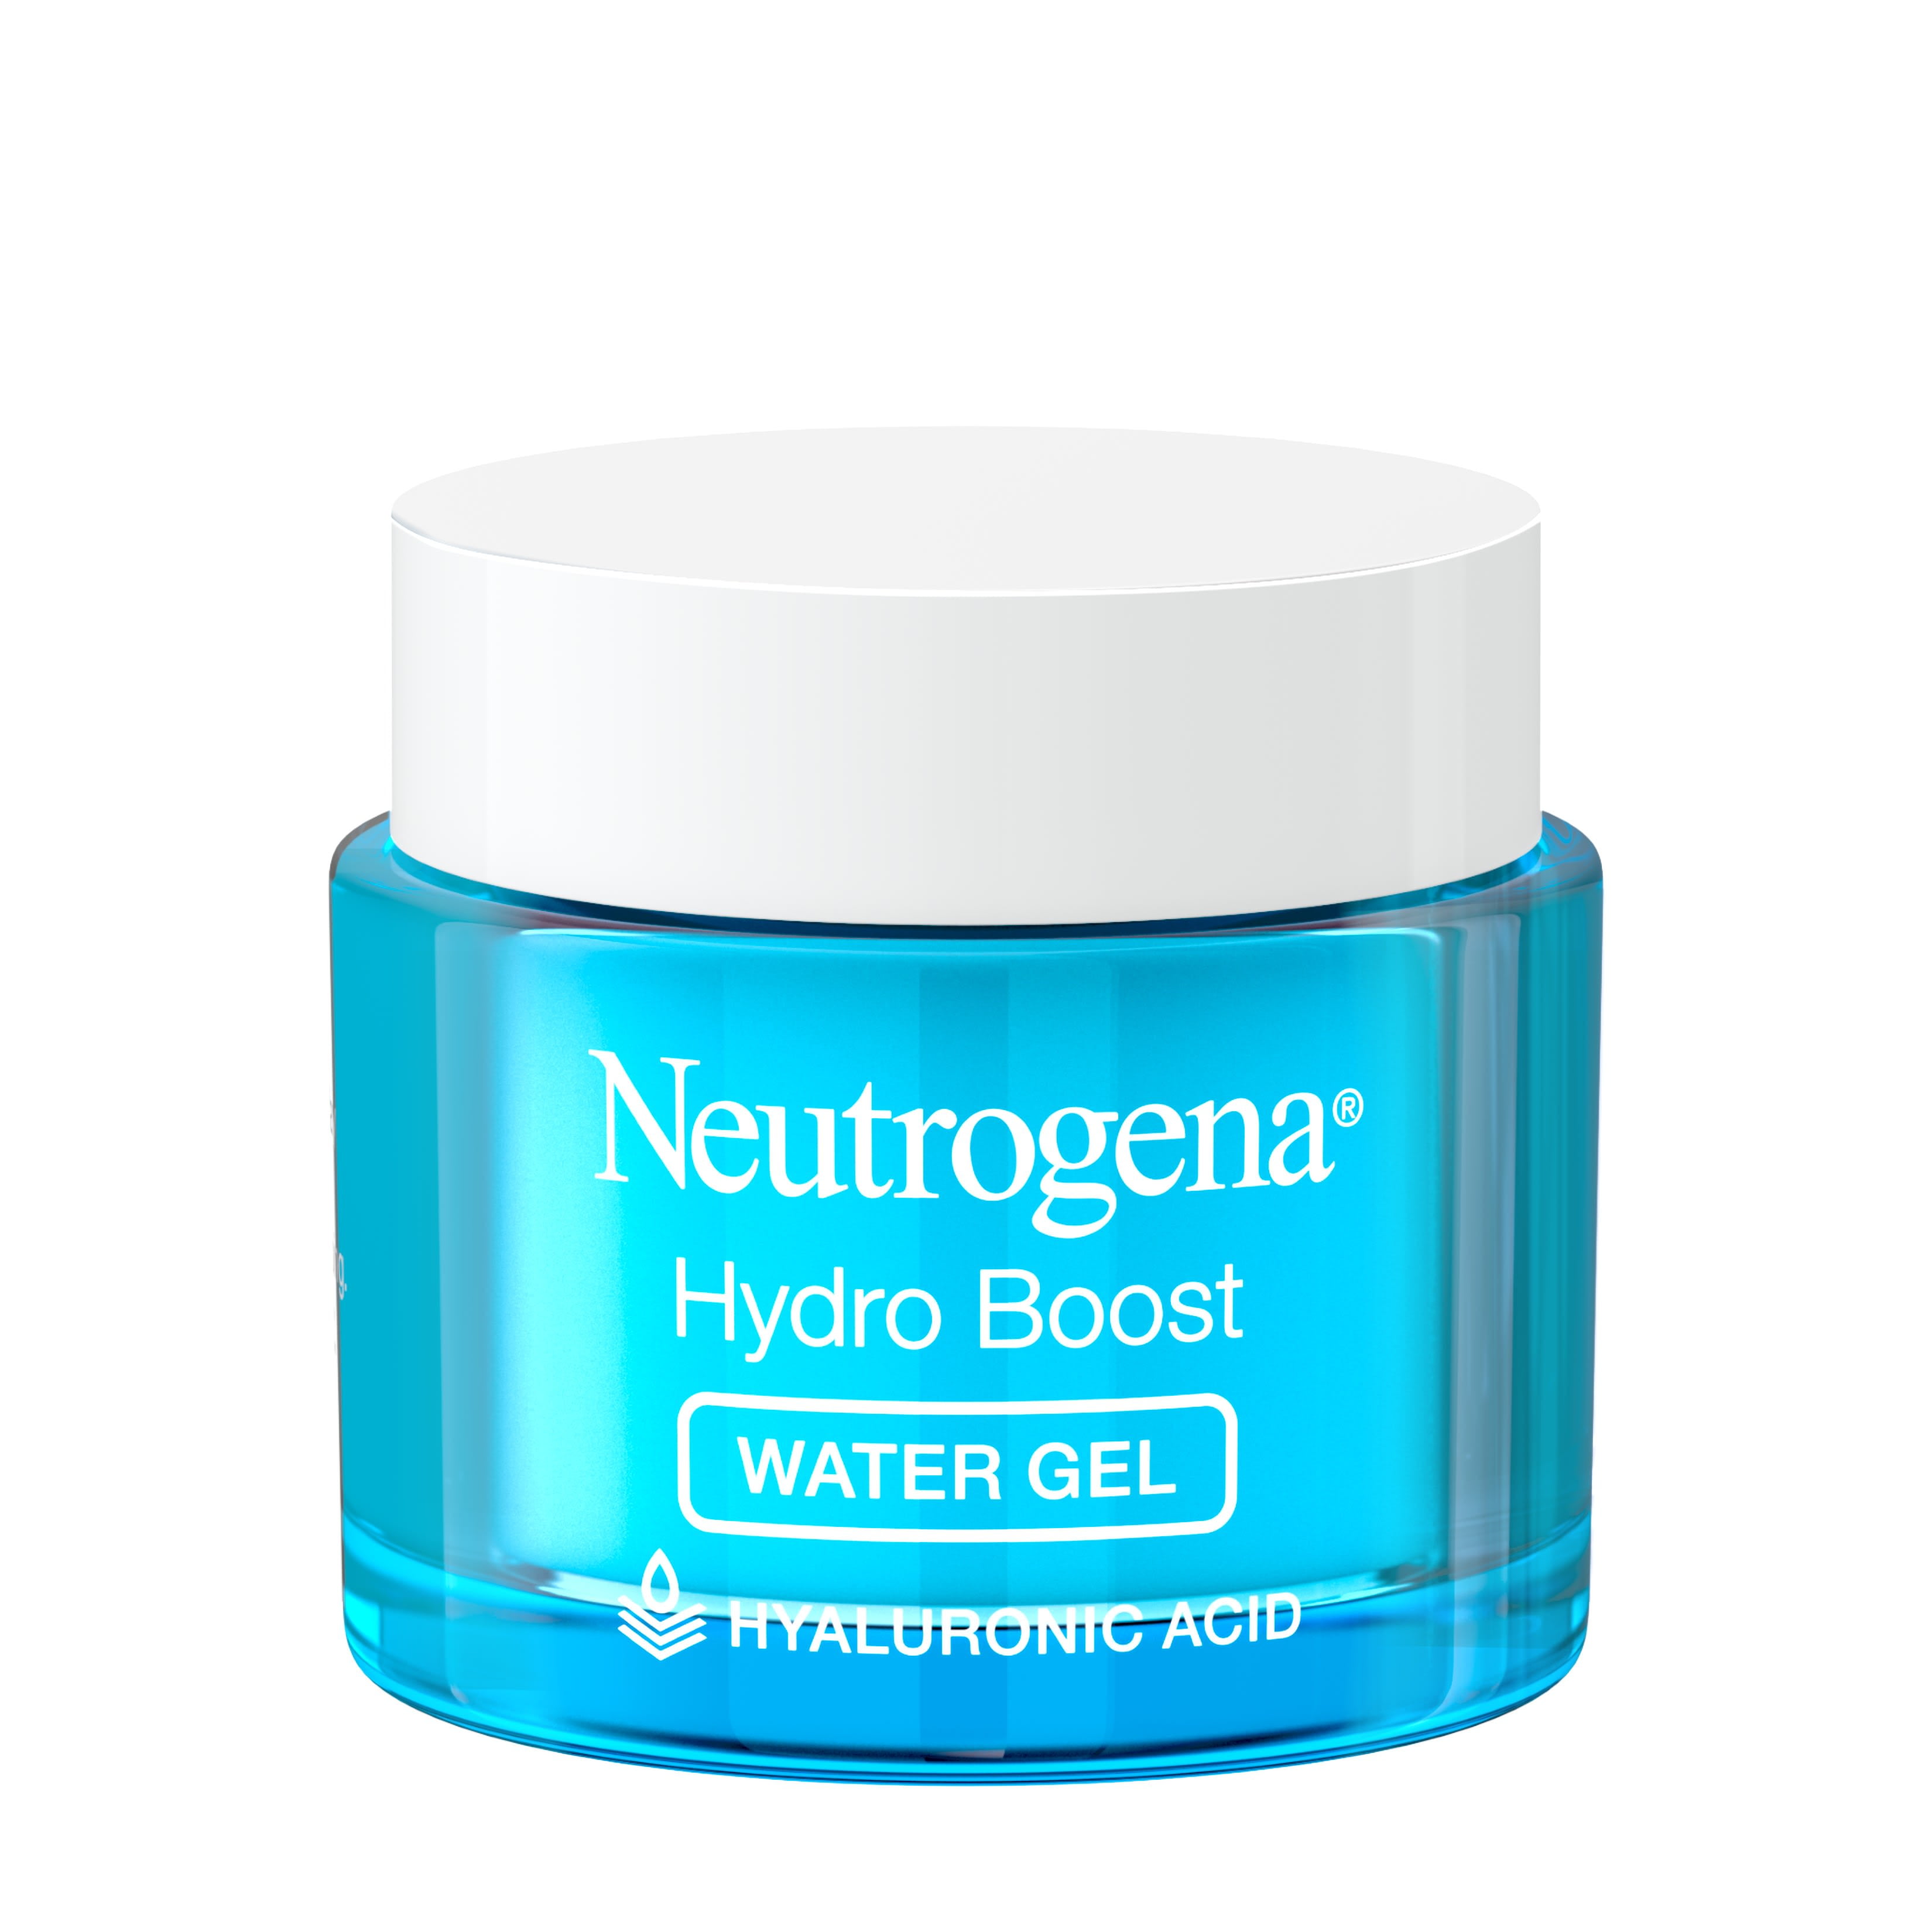 Neutrogena Hydro Boost. Neutrogena Hydro Boost Water Gel. Die Neutrogena Hydro Boost Aqua Creme. Hydra Boost Aqua Gel Neutrogena.